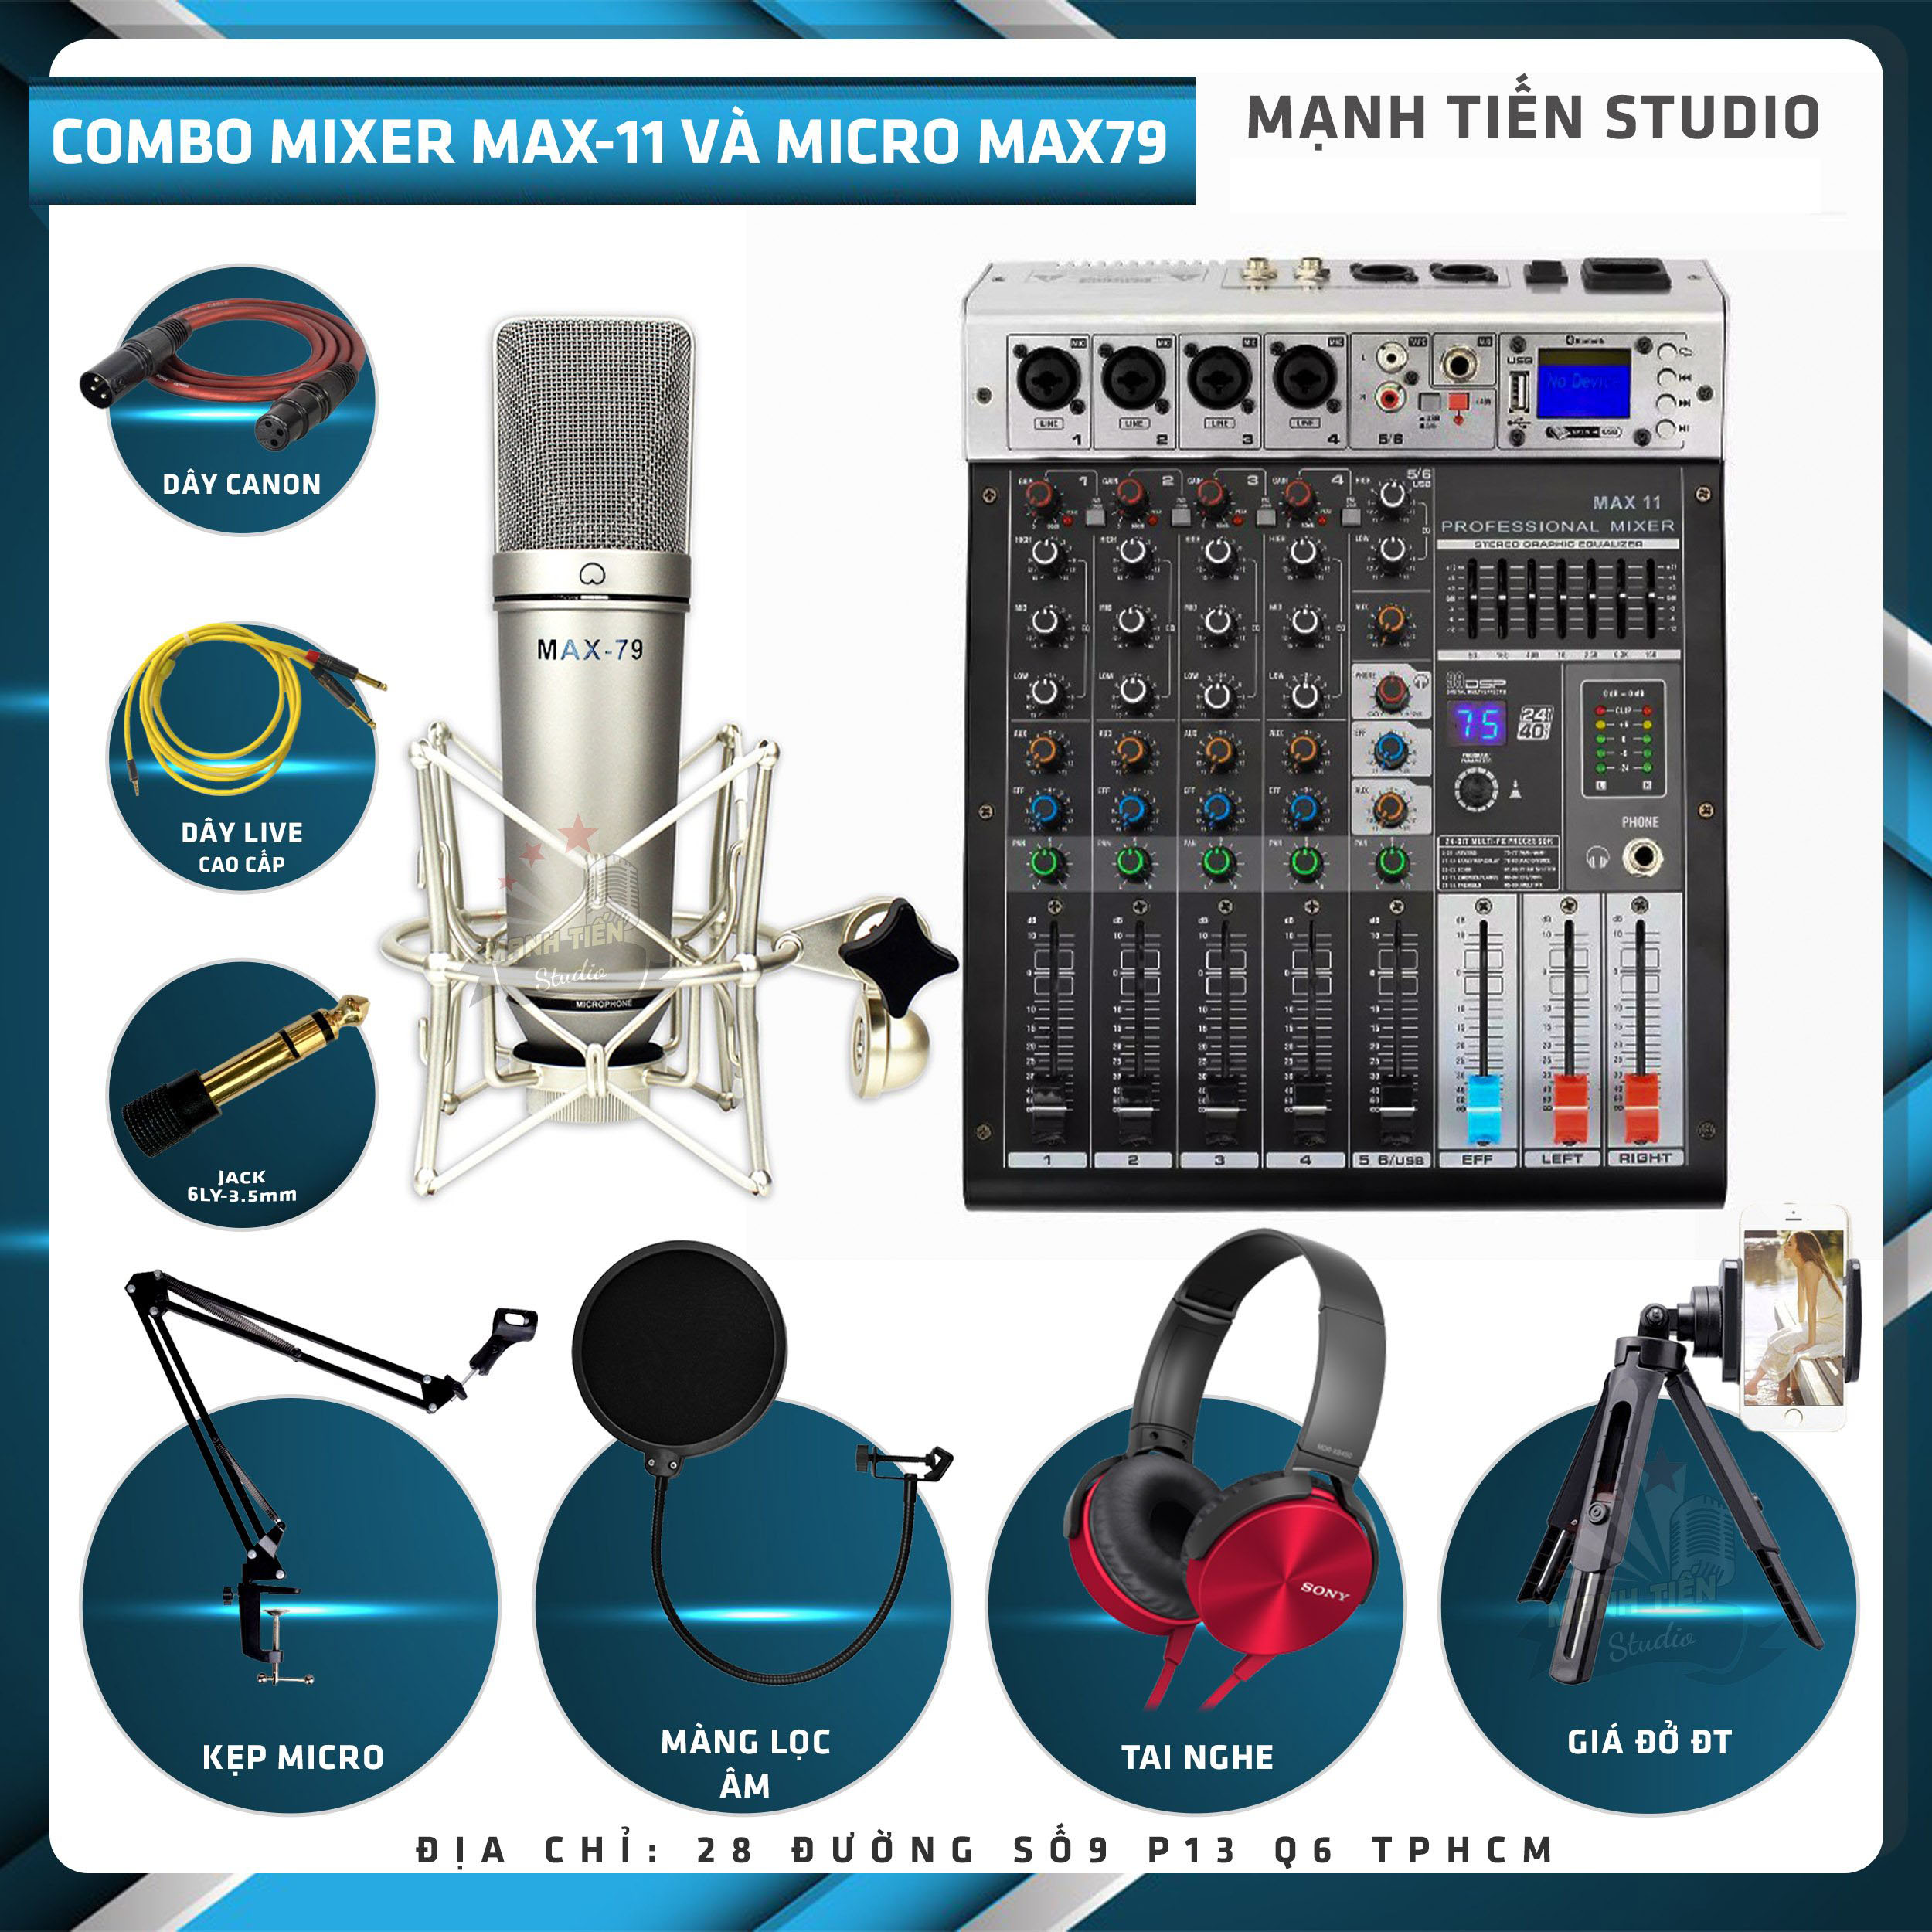 Combo thu âm, livestream Micro Max 79, Mixer Max 11 - Kèm full phụ kiện kẹp micro, màng lọc, tai nghe, dây canon, dây livestream, giá đỡ ĐT - Hỗ trợ thu âm, karaoke online chuyên nghiệp - Hàng nhập khẩu